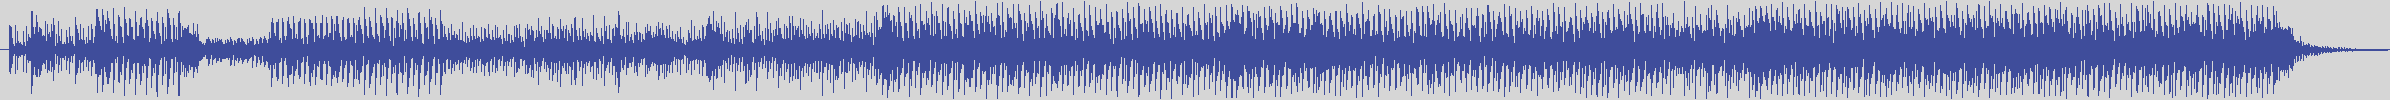 nf_boyz_records [NFY072] Database Pluto - Eye Nothing [Original Mix] audio wave form